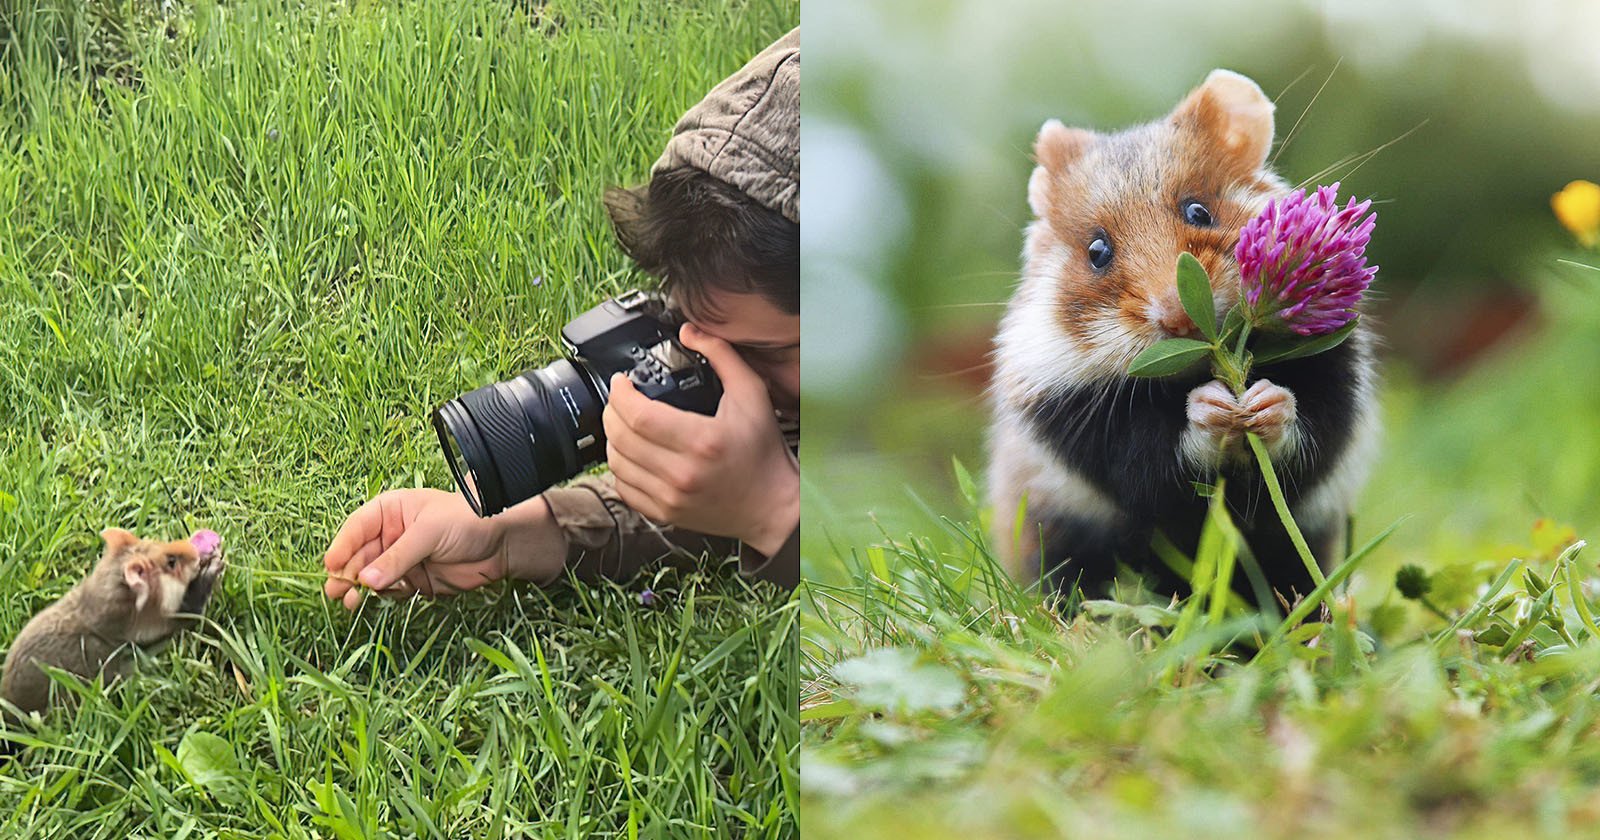  photographer captures cuteness wild hamsters 